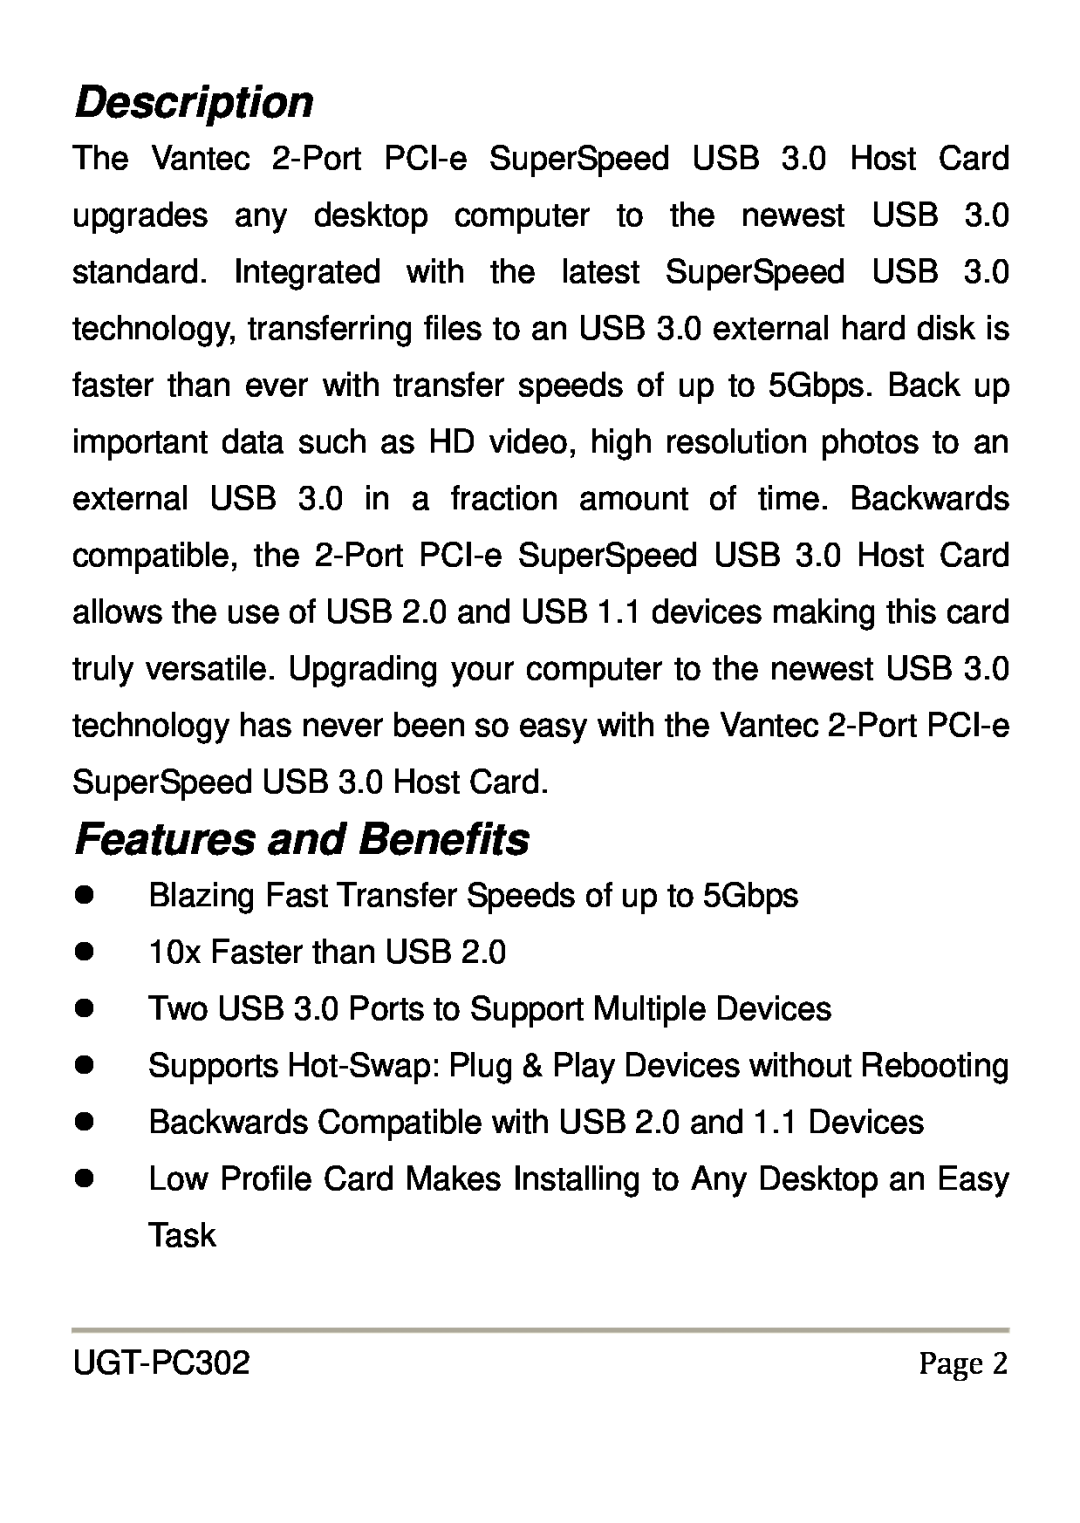 Vantec UGT-PC302 user manual Description, Features and Benefits 